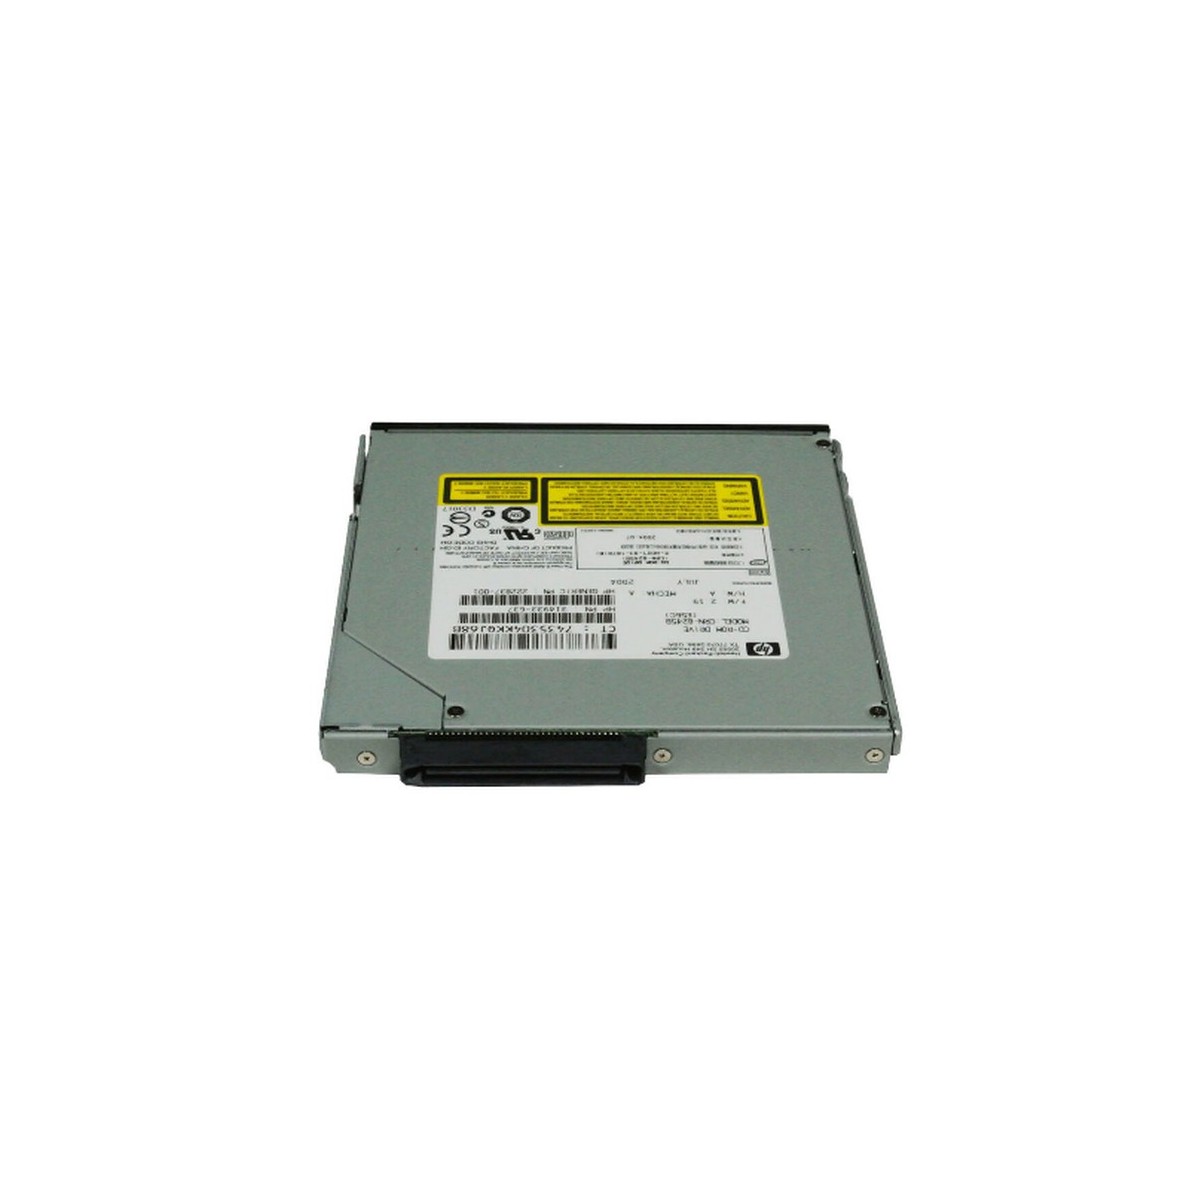 NAPED HP DL360 G2 CD-ROM CRN-8245B 314933-637